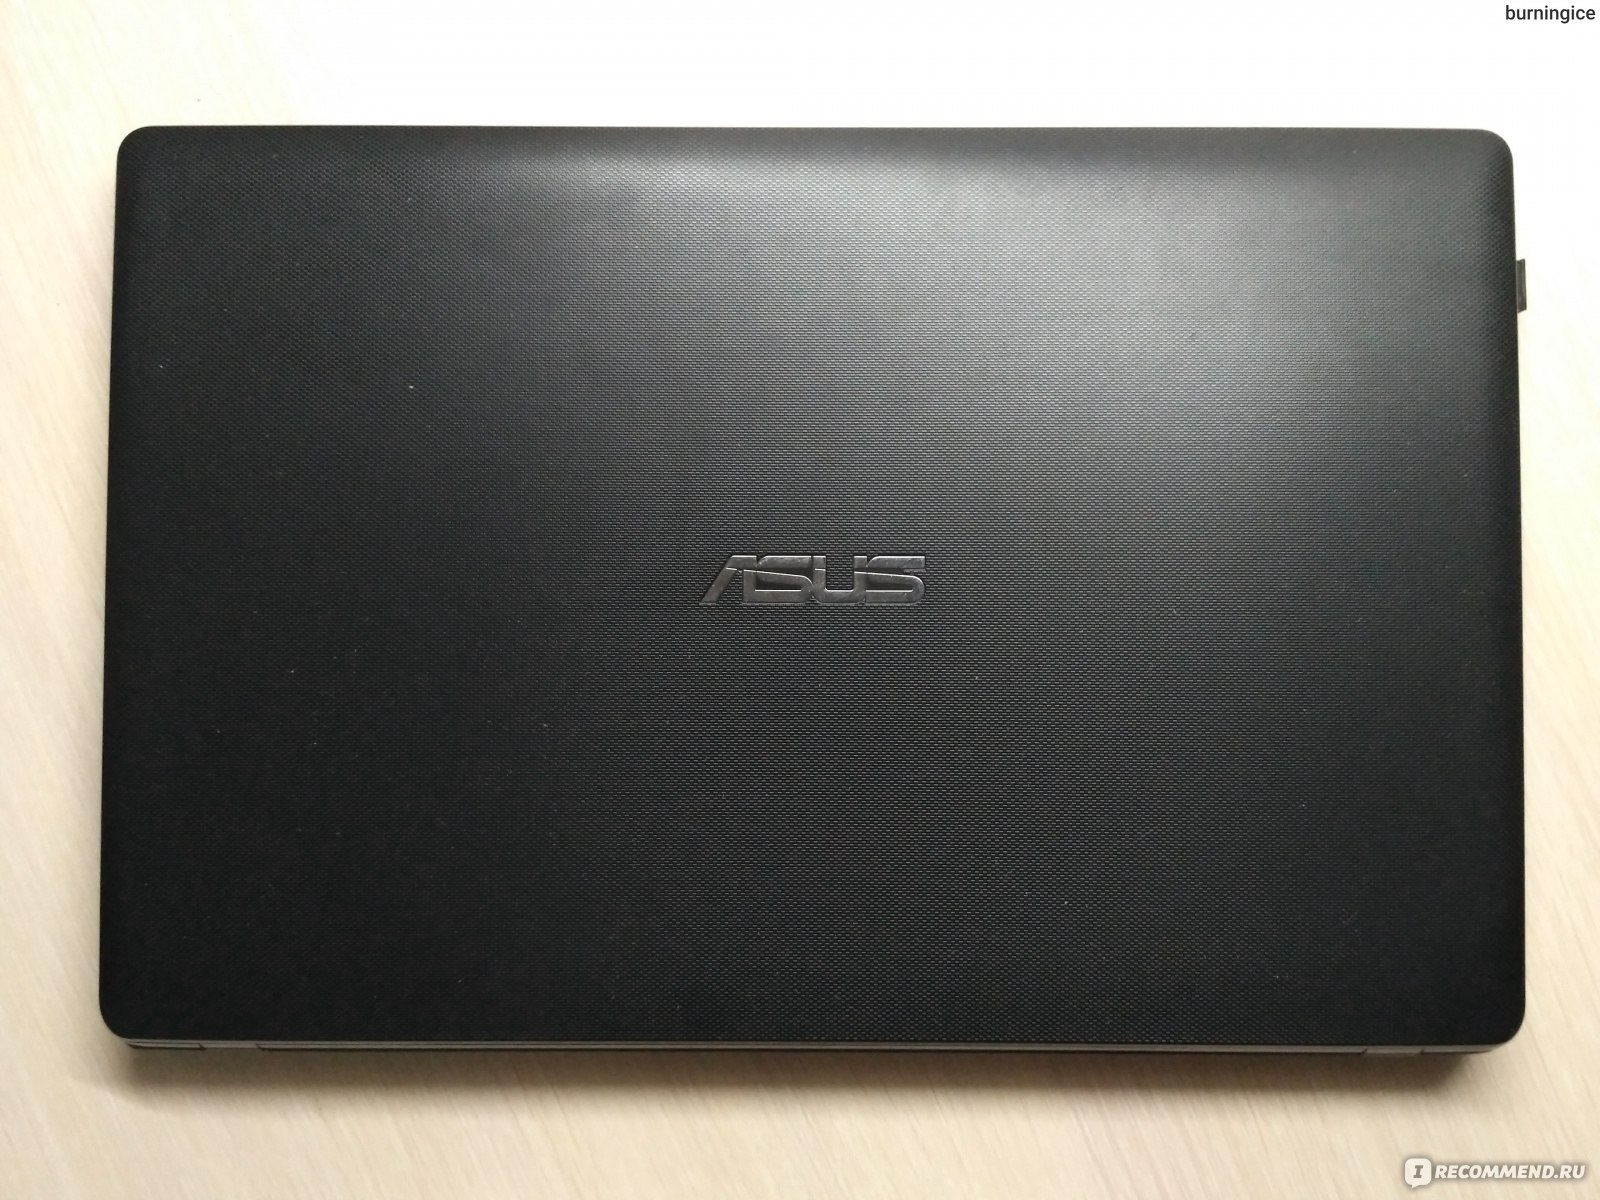 Купить Ноутбук Asus X552m